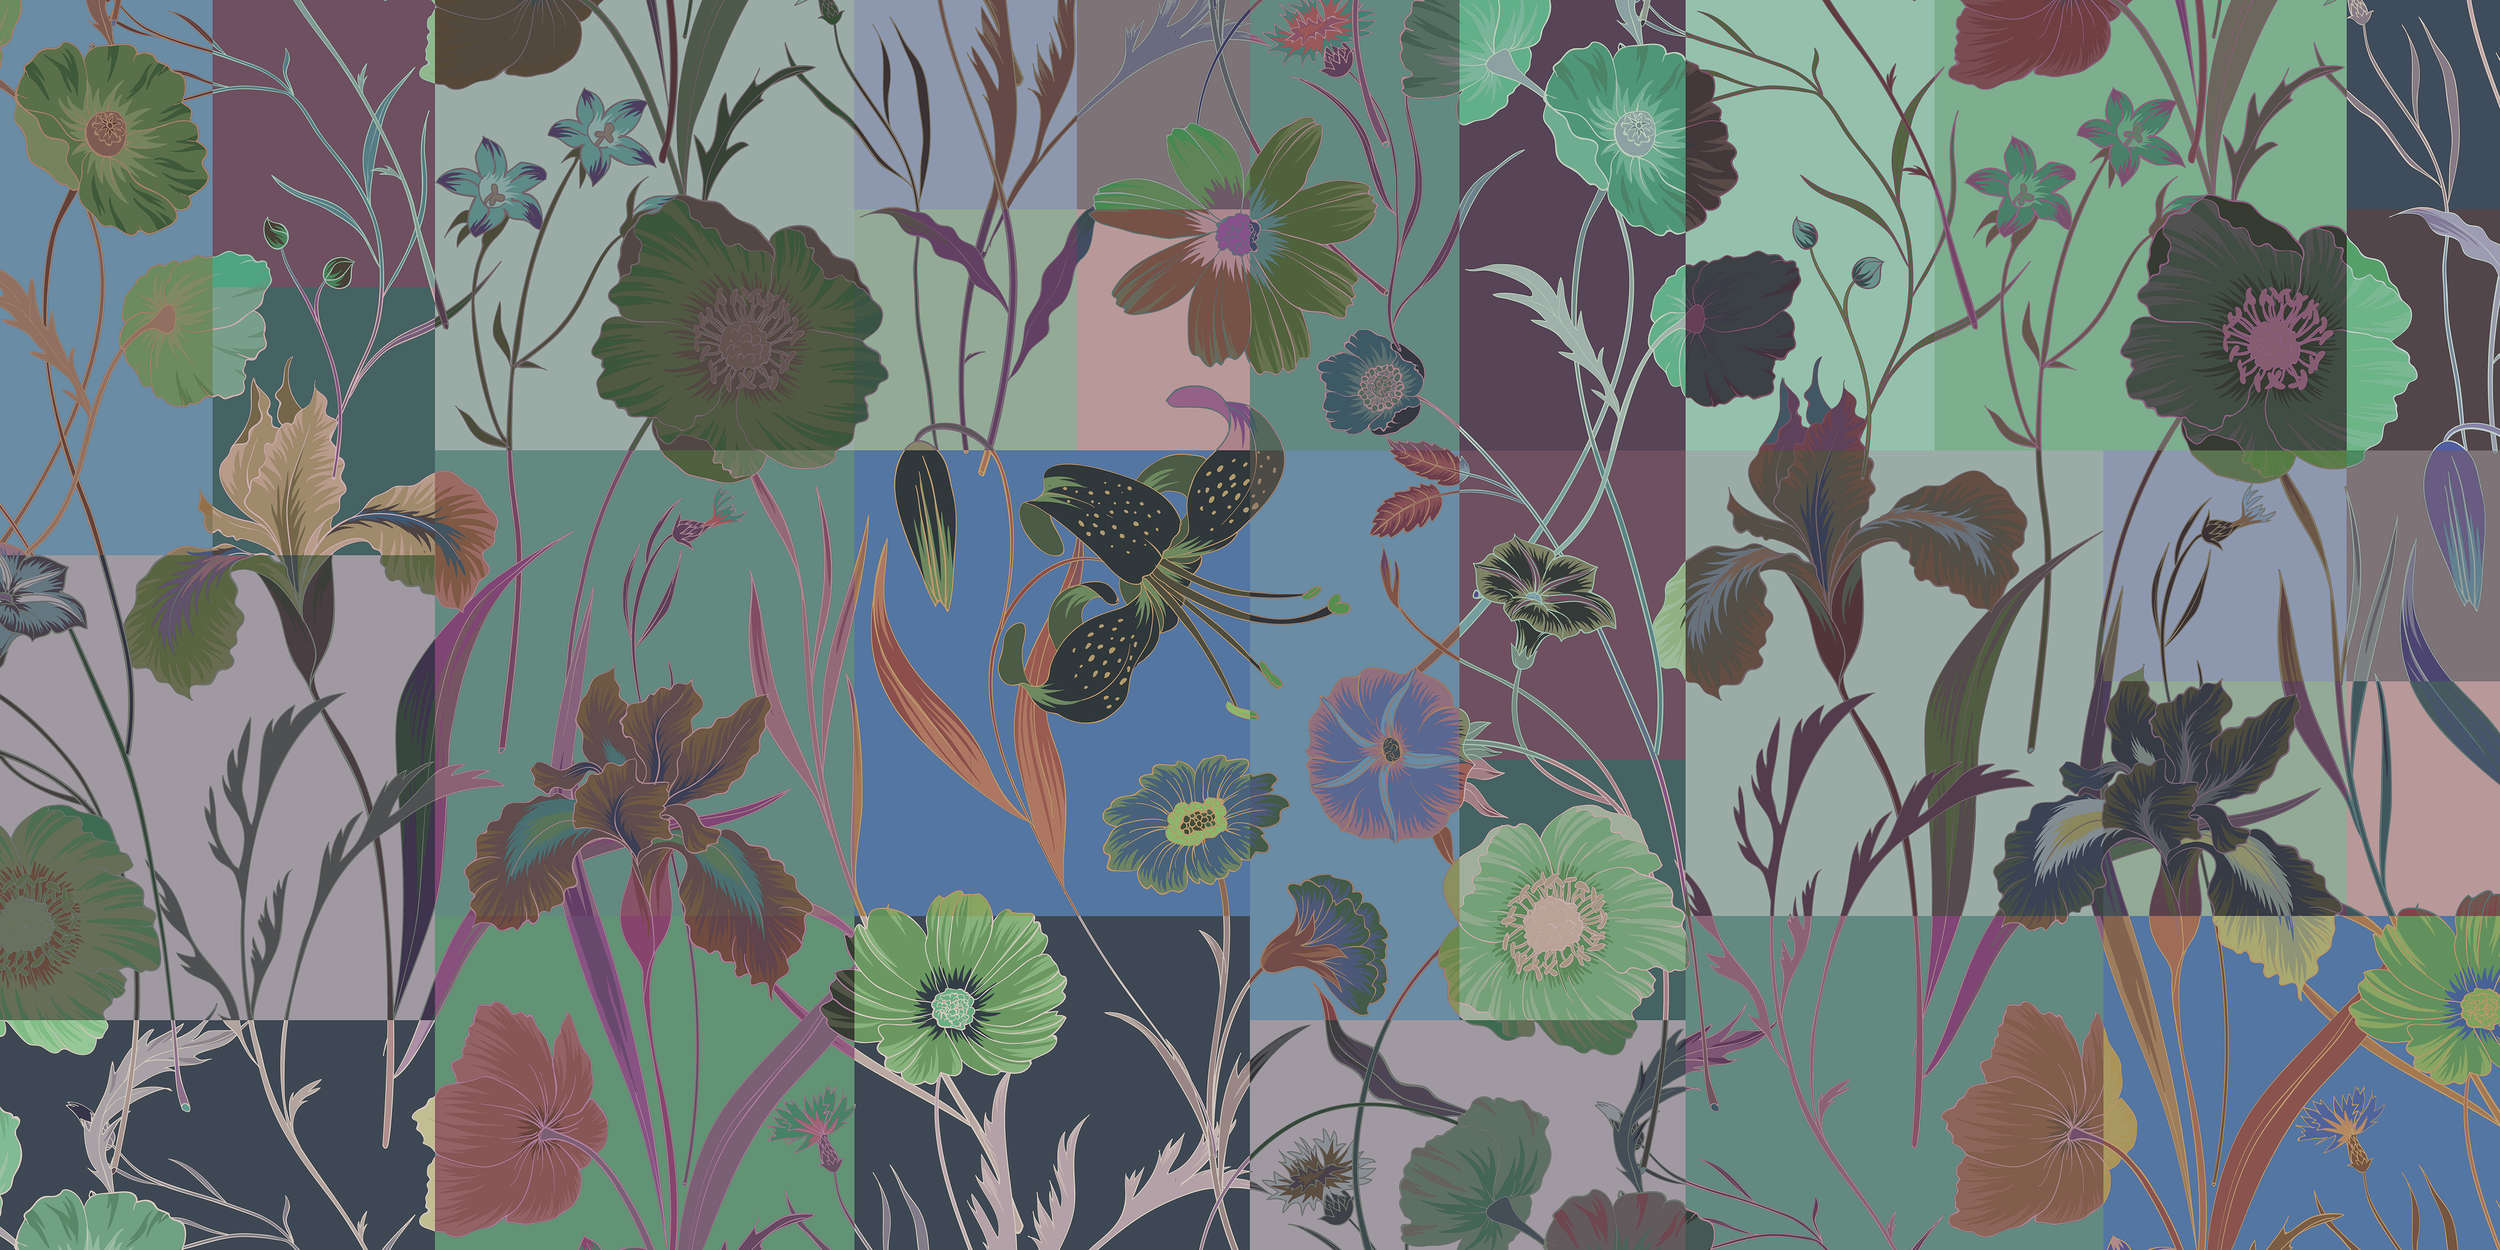             Floral patch 2 - Blumen Fototapete mit Farben Patchwork – Blau, Grün | Mattes Glattvlies
        